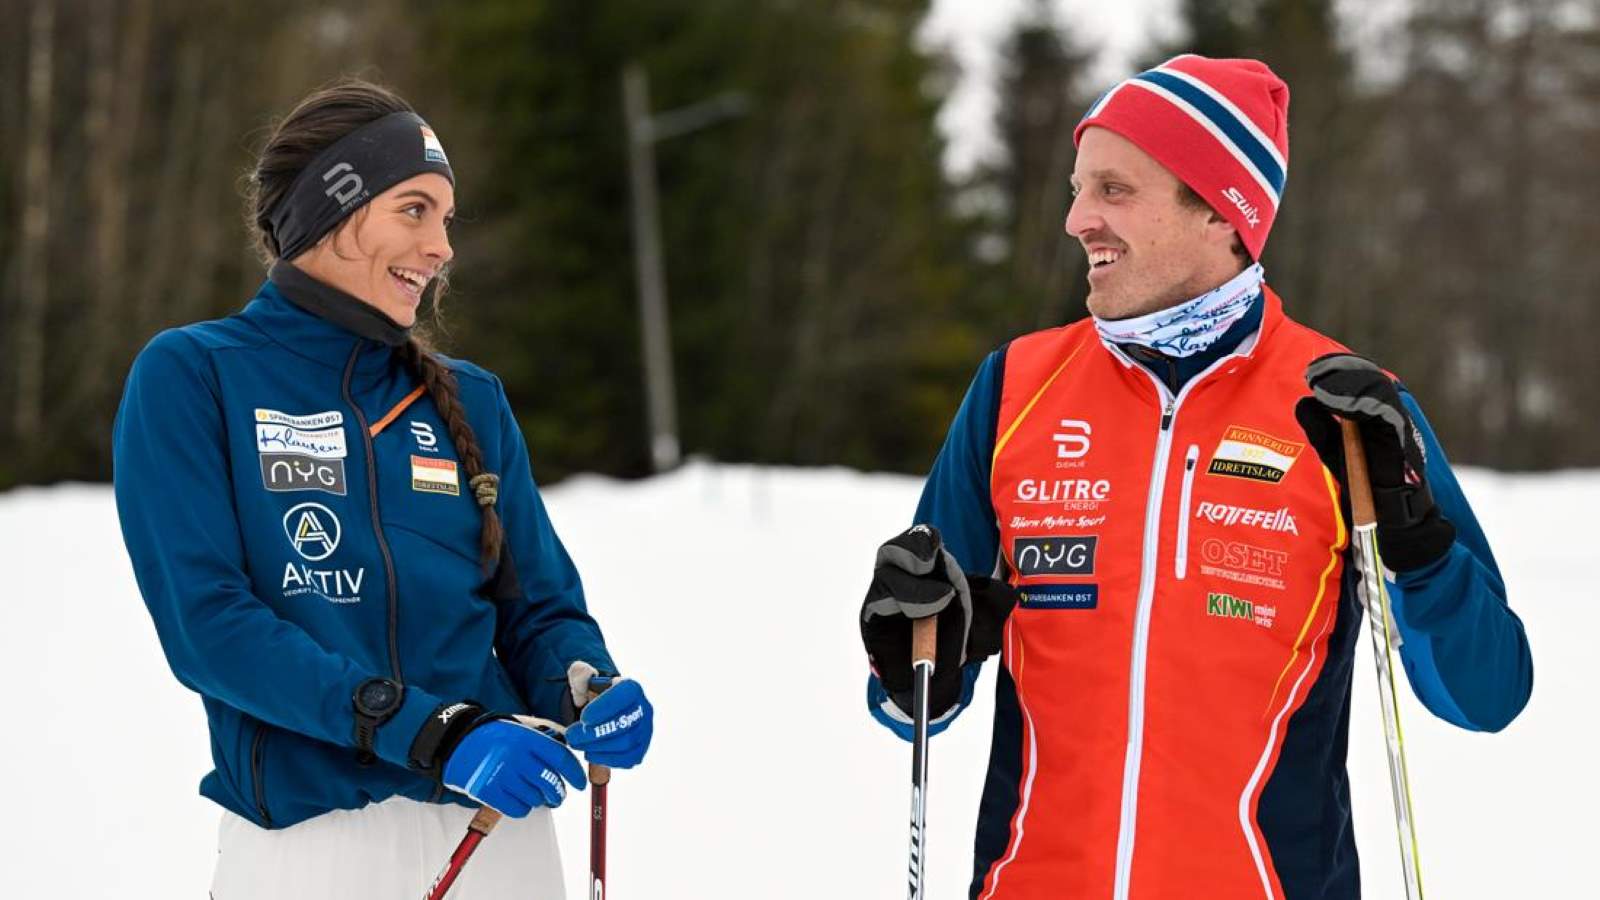 Skistad smiler til trener Sofienlund ute i skiløypa